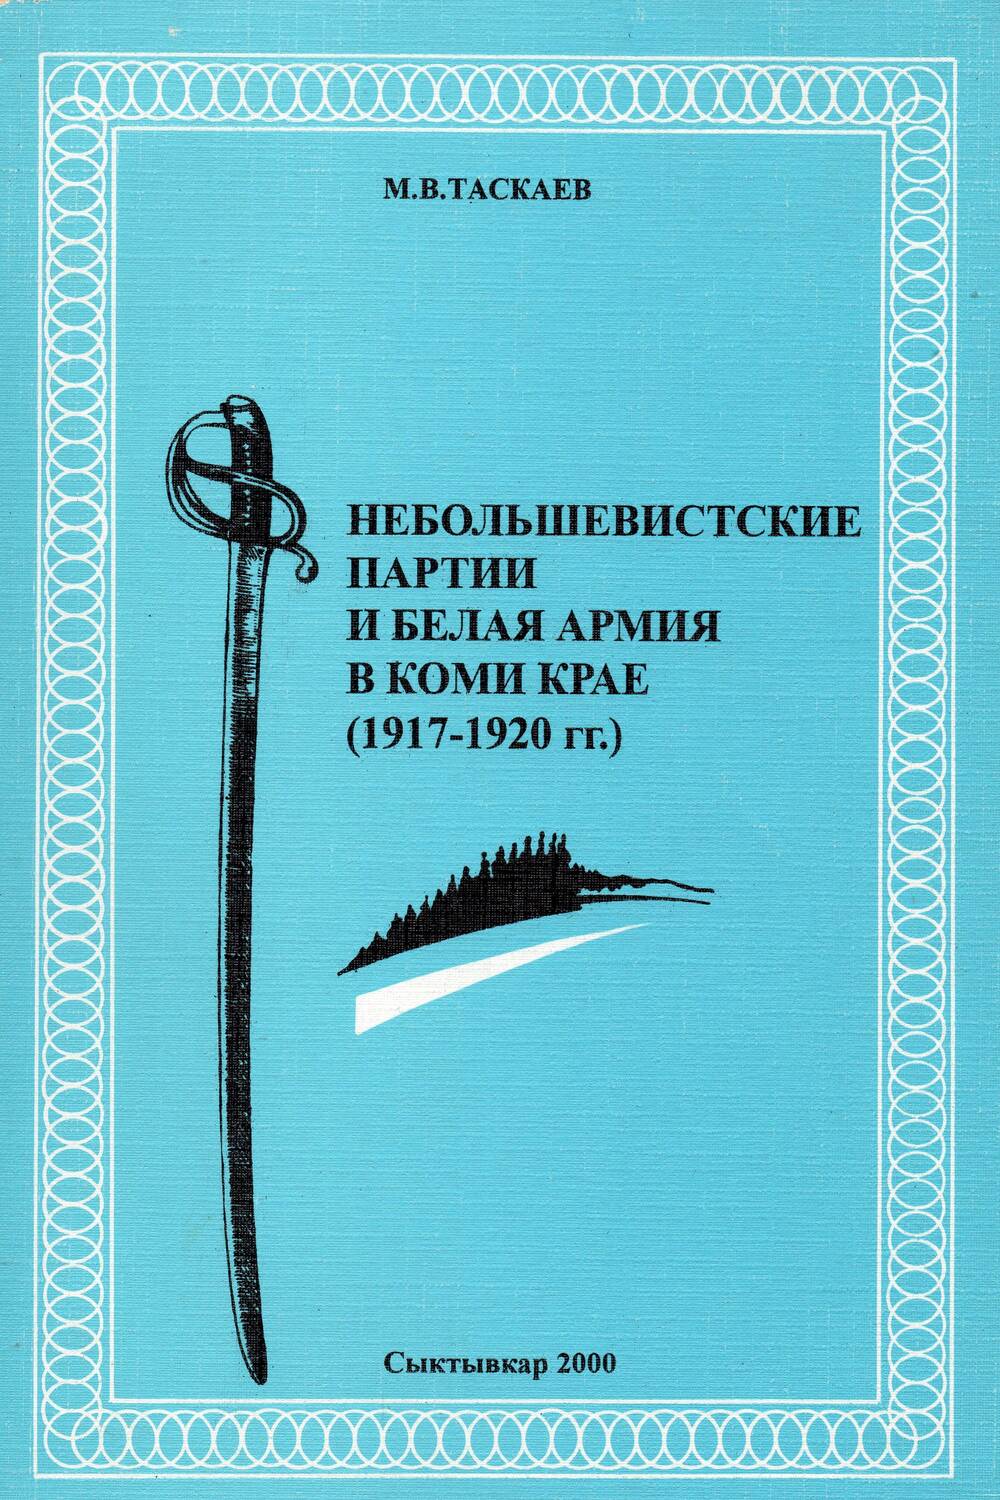 Книга Небольшевистские партии и белая армия в Коми крае